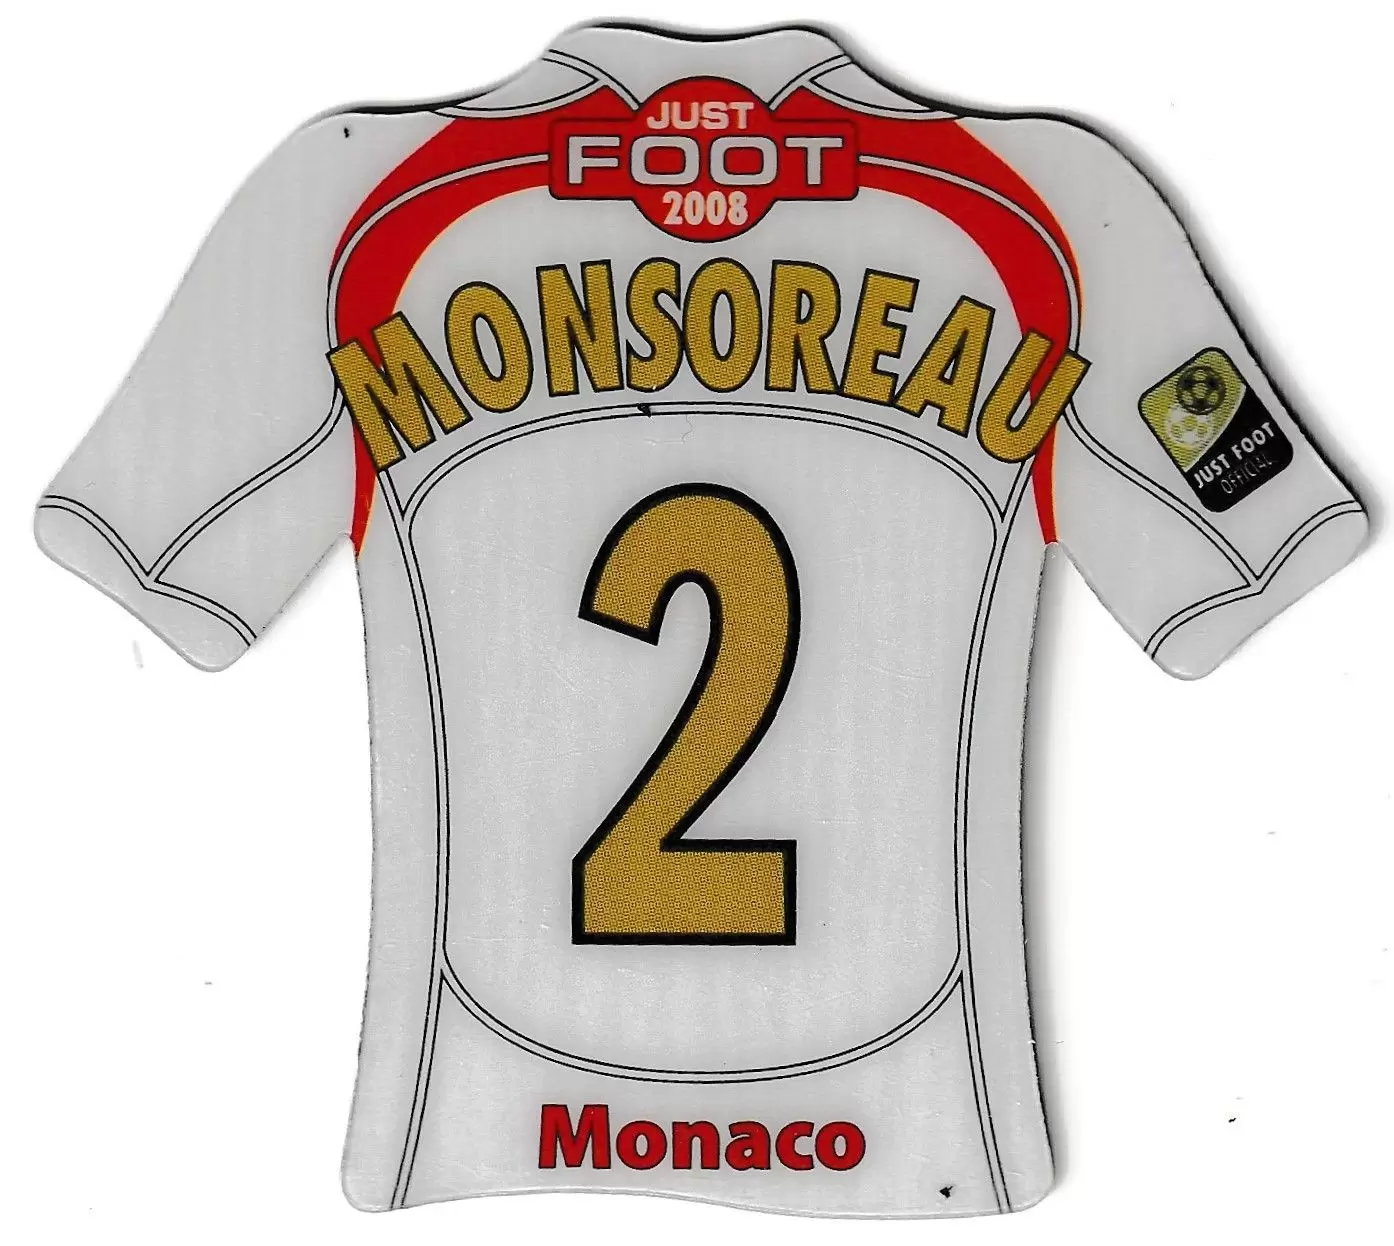 Just Foot 2008 - Monaco 2 - Monsoreau